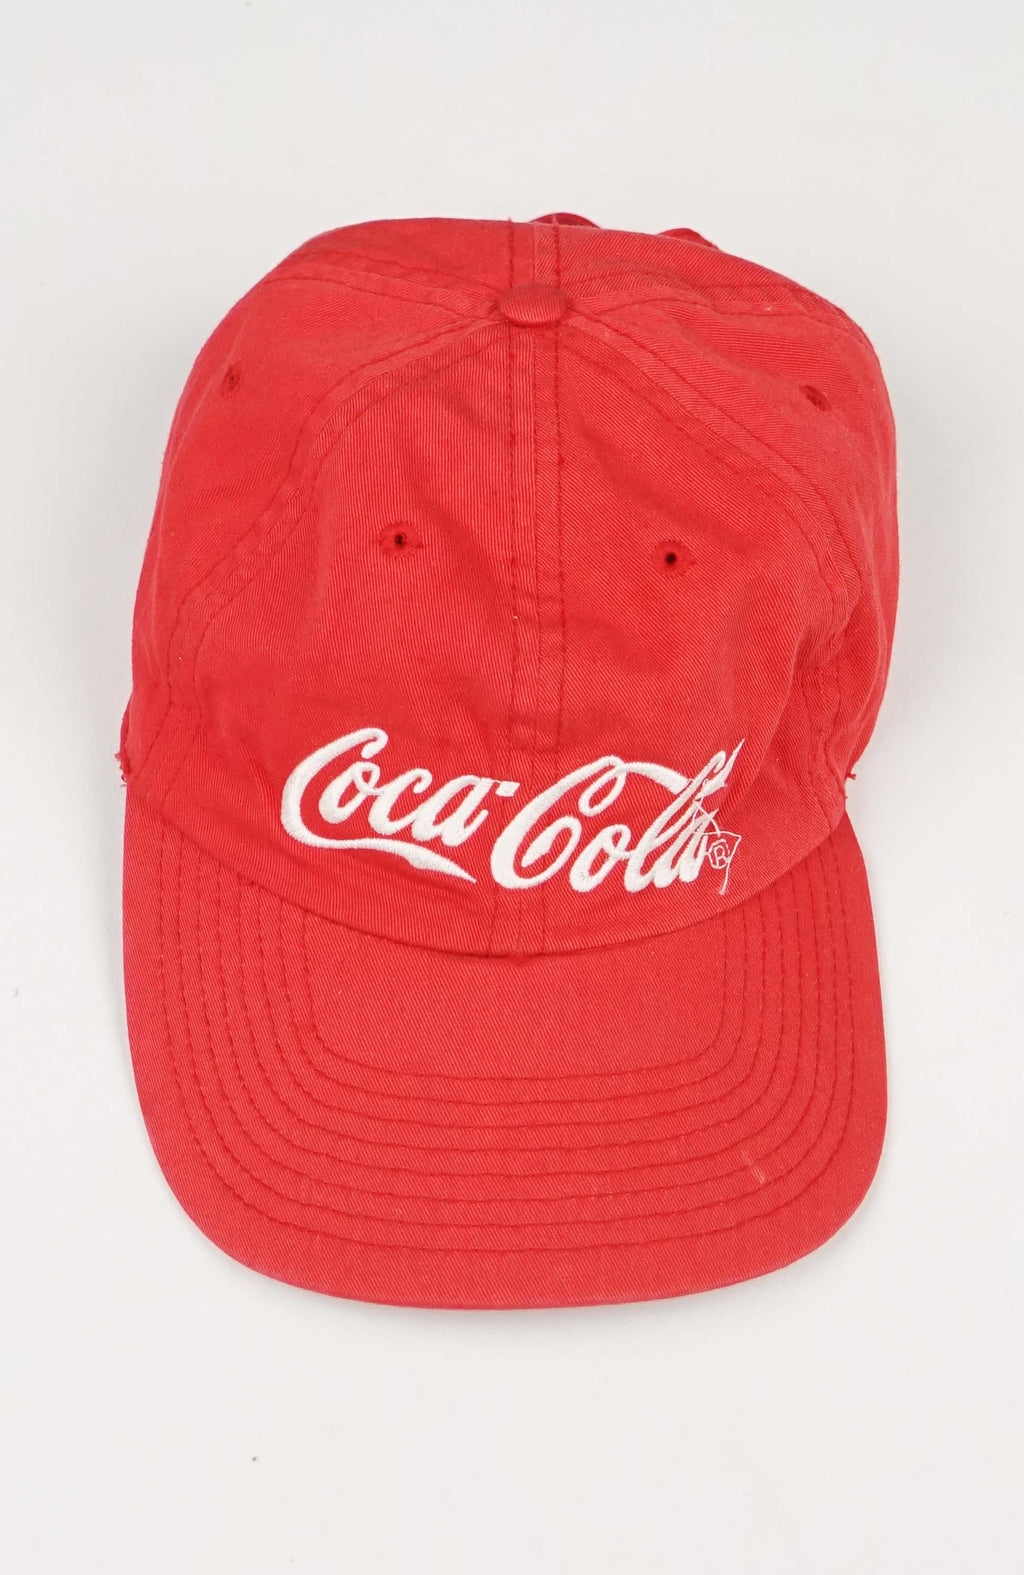 VINTAGE COCA-COLA HAT